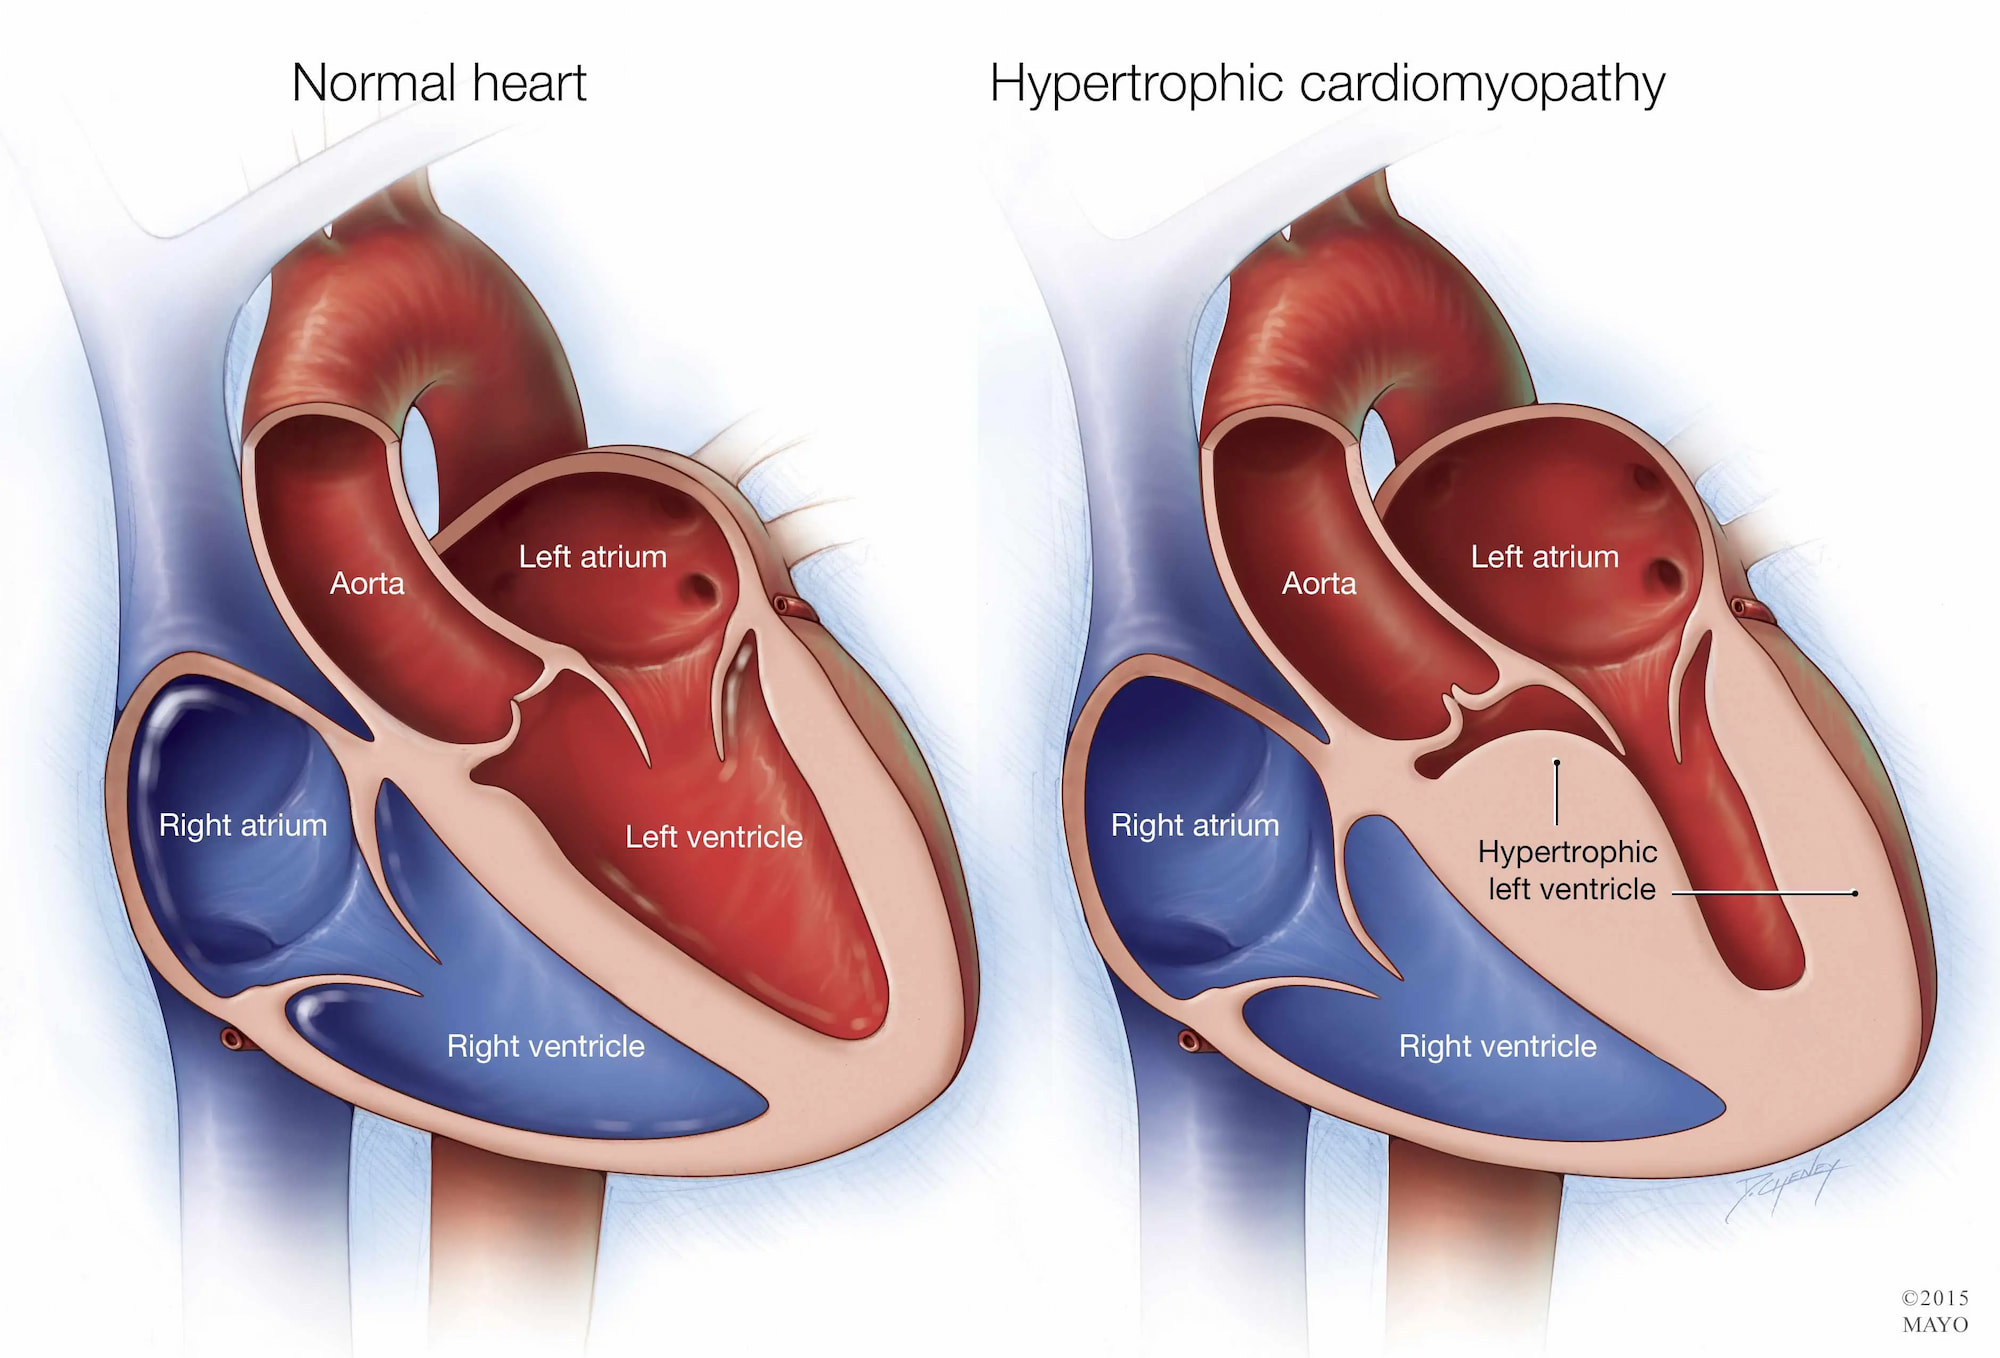 hypertrophic cardiomyopathy